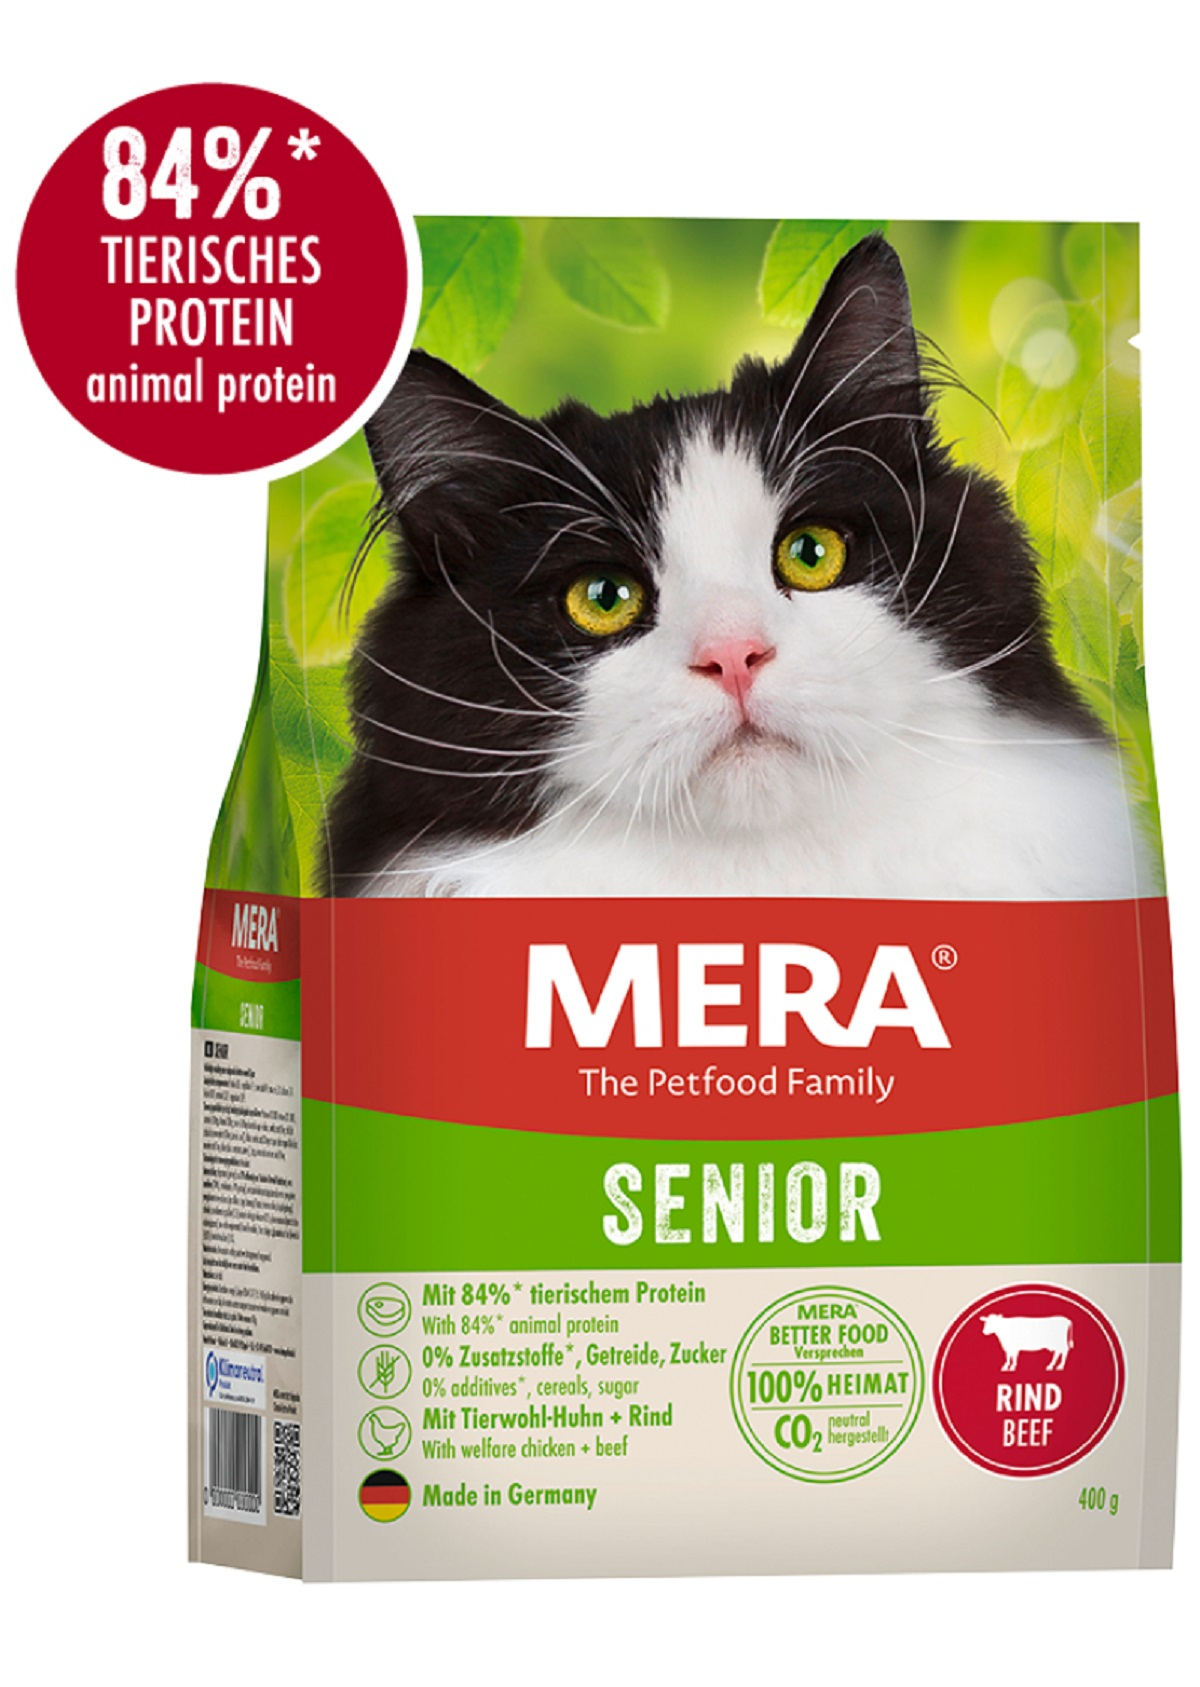 MERA Cat mit Rindfleisch für ältere Katzen